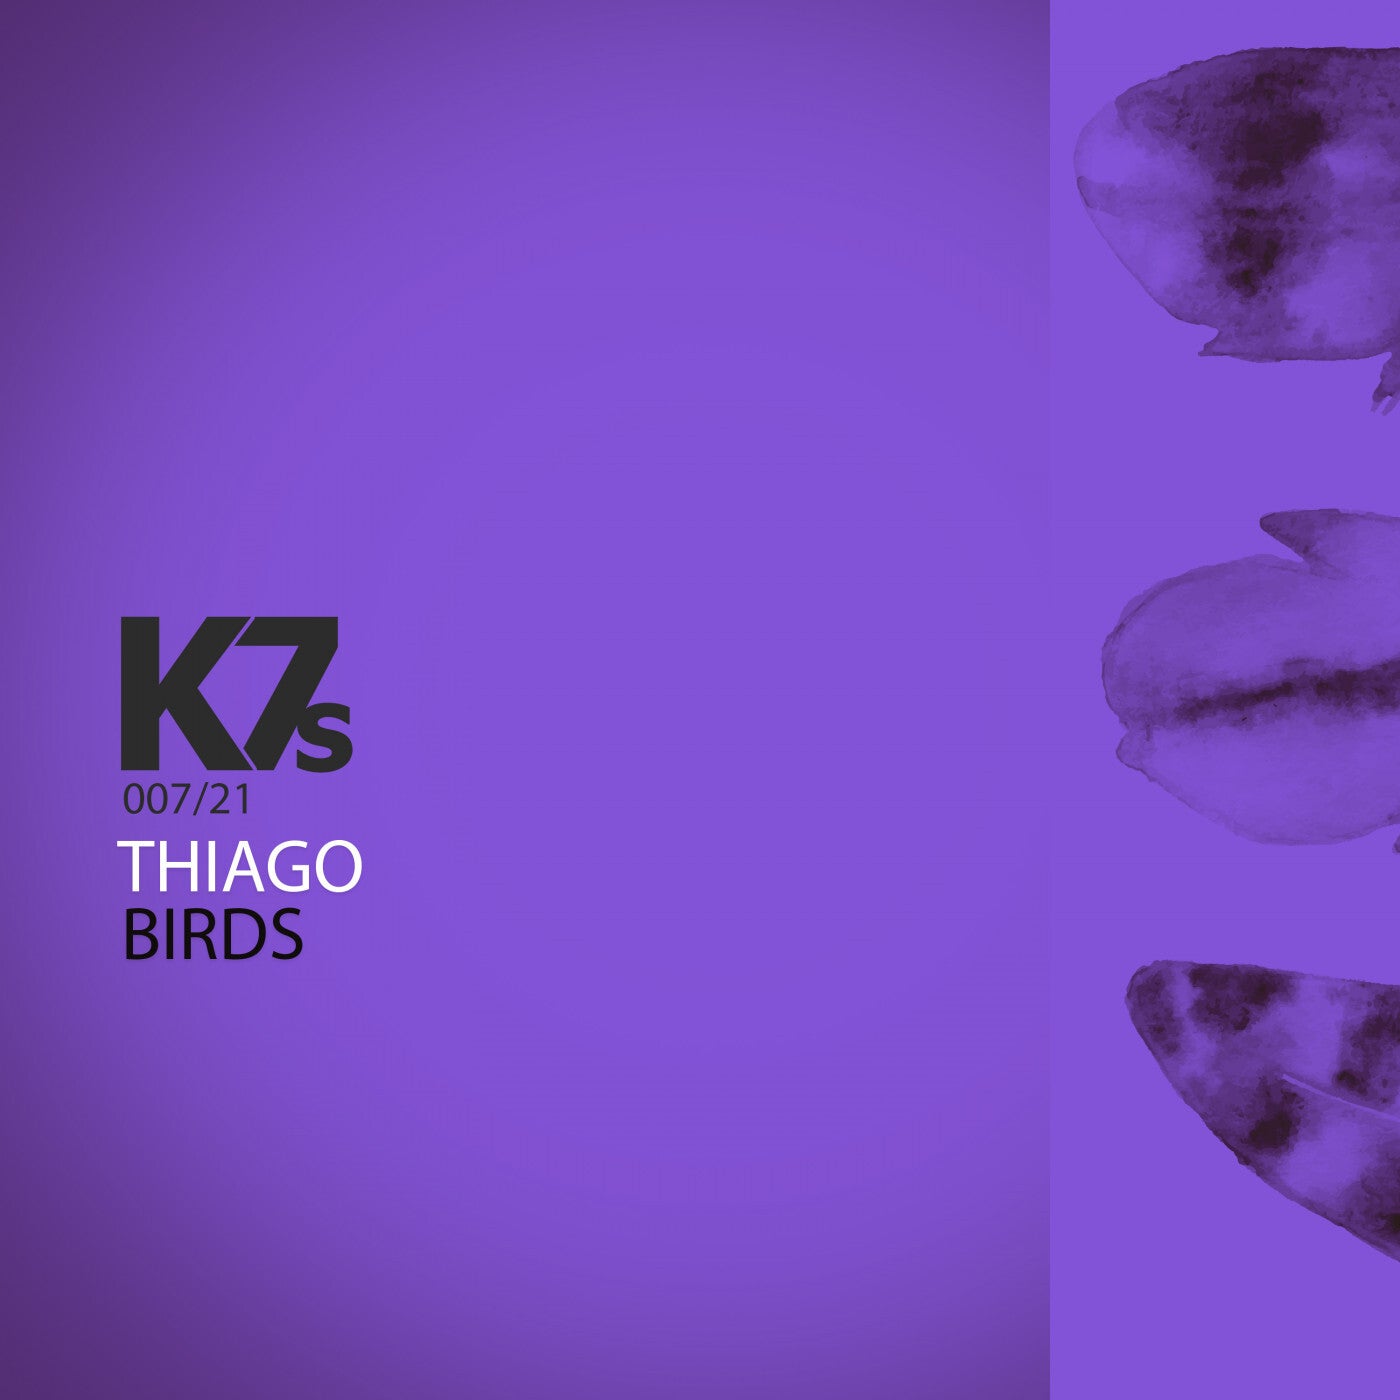 K7S artists & music download - Beatport